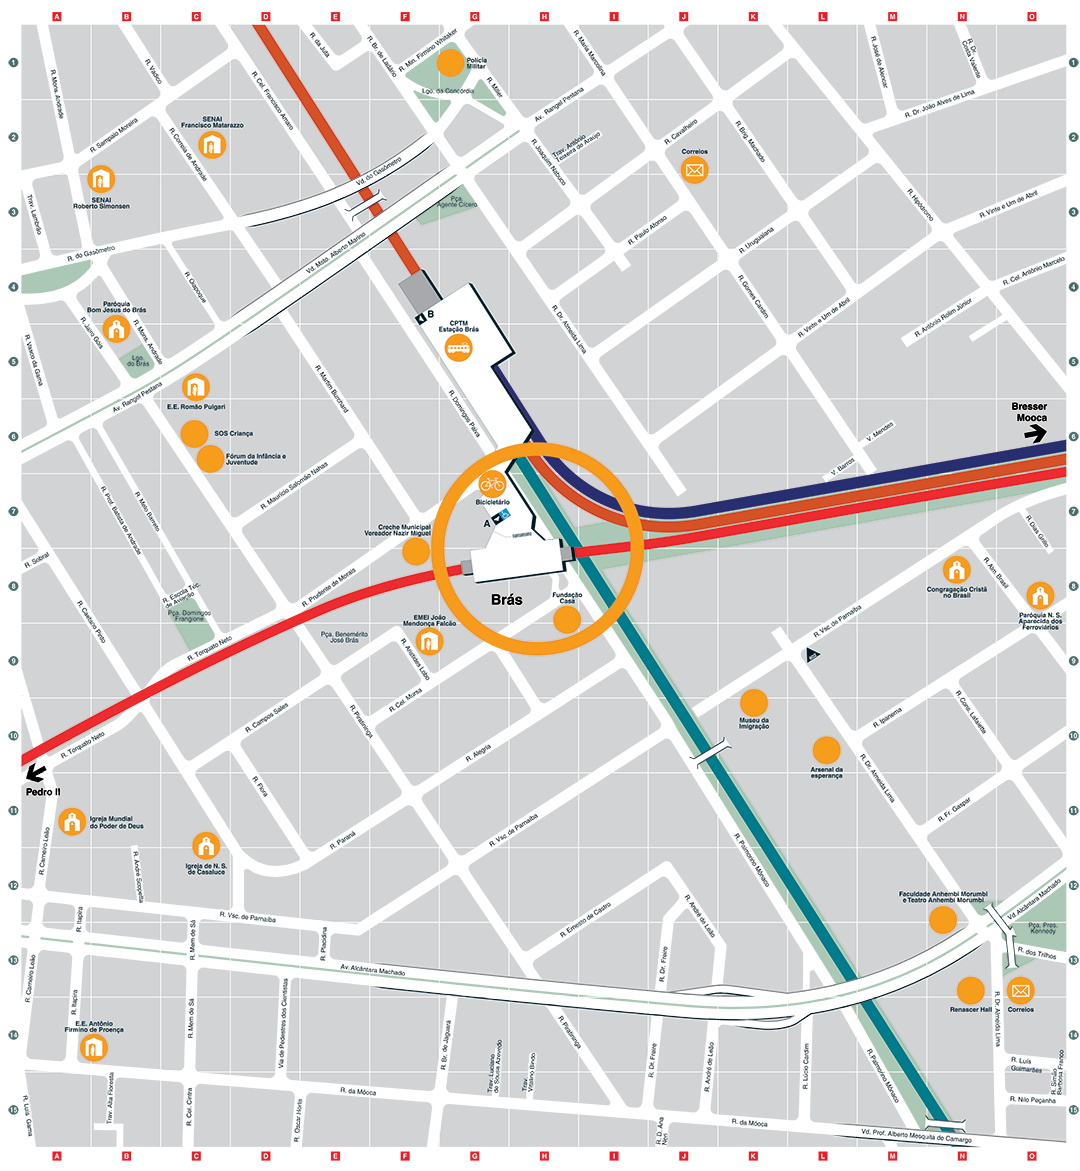 Mapa dos arredores da Estação Brás